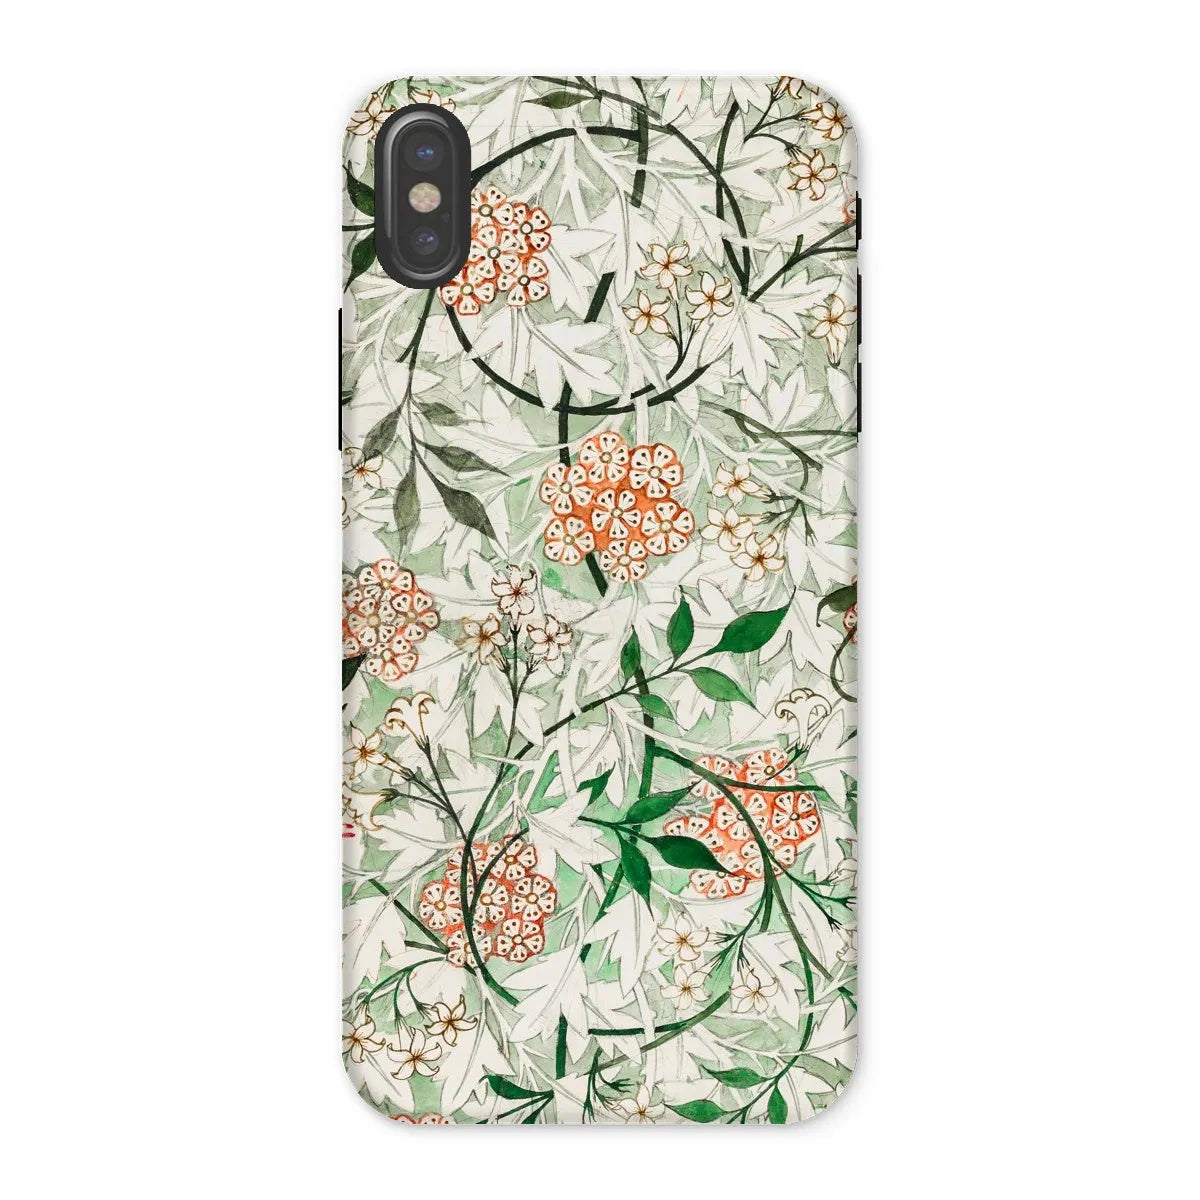 Jasmine Floral Aesthetic Art Phone Case - William Morris - Iphone x / Matte - Mobile Phone Cases - Aesthetic Art